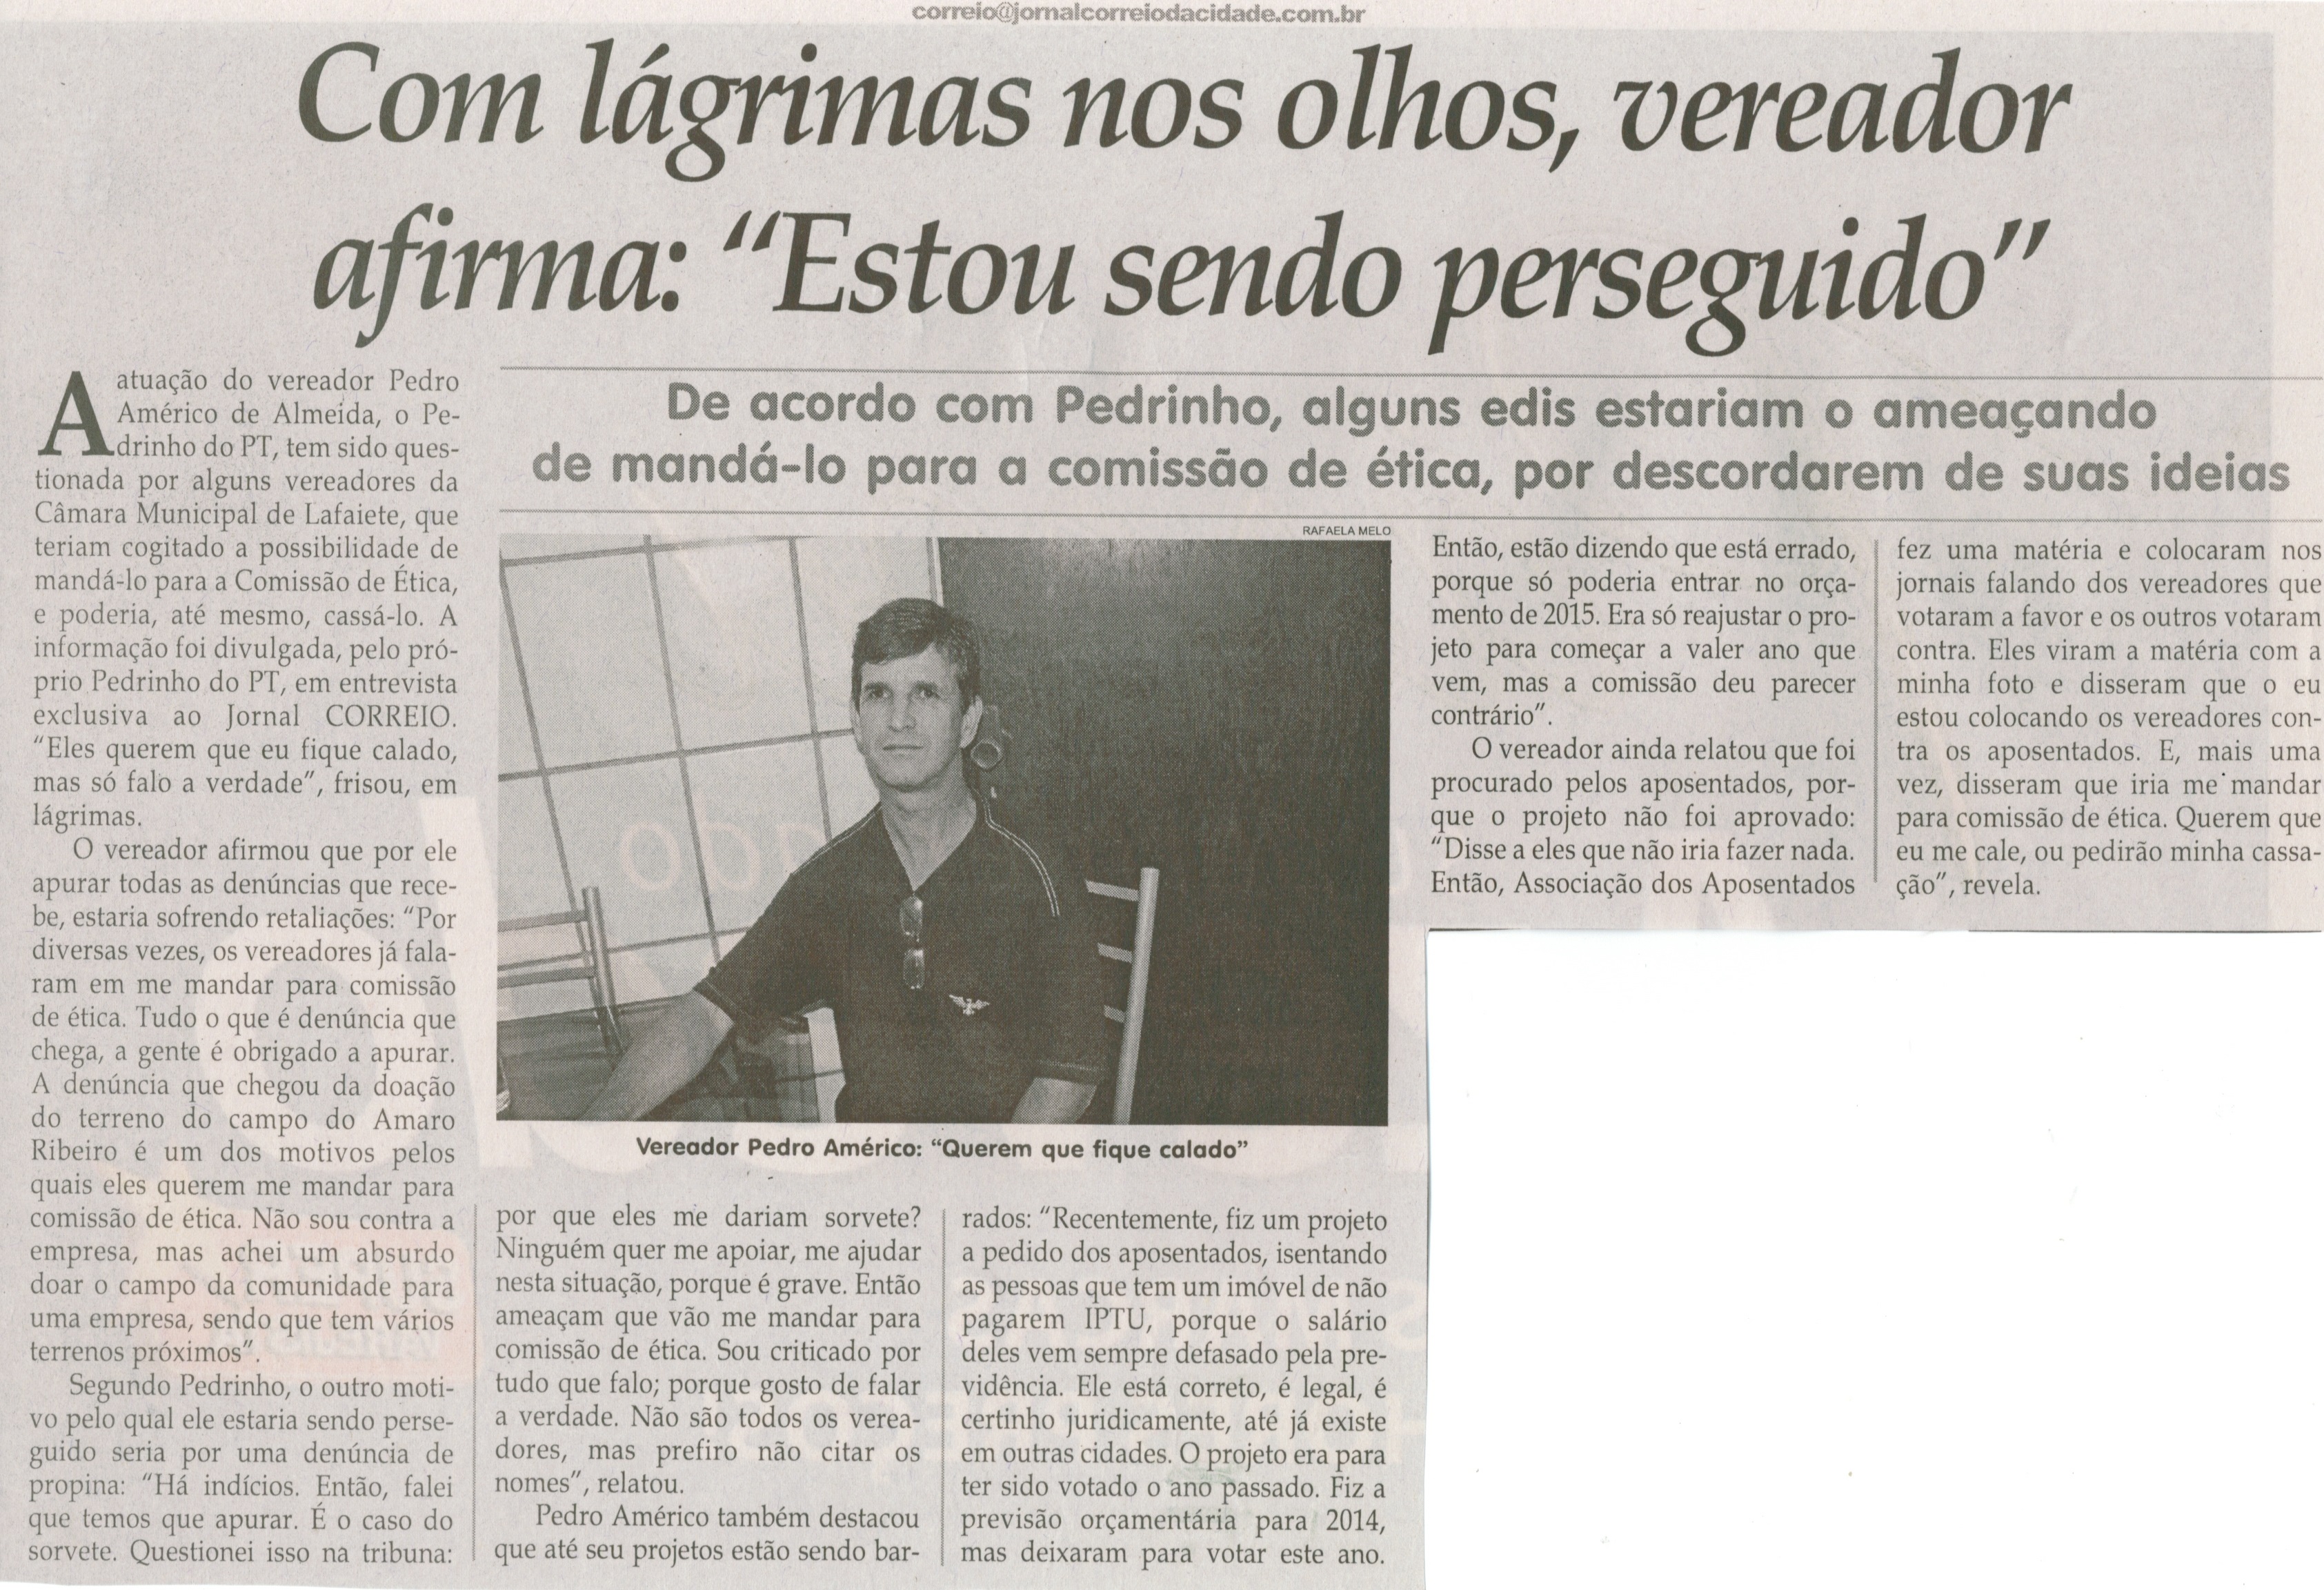 Com lágrimas nos olhos, vereador afirma  "Estou sendo perseguido". Jornal Correio da Cidade, Conselheiro Lafaiete, 04 mar. 2014, p. 6.